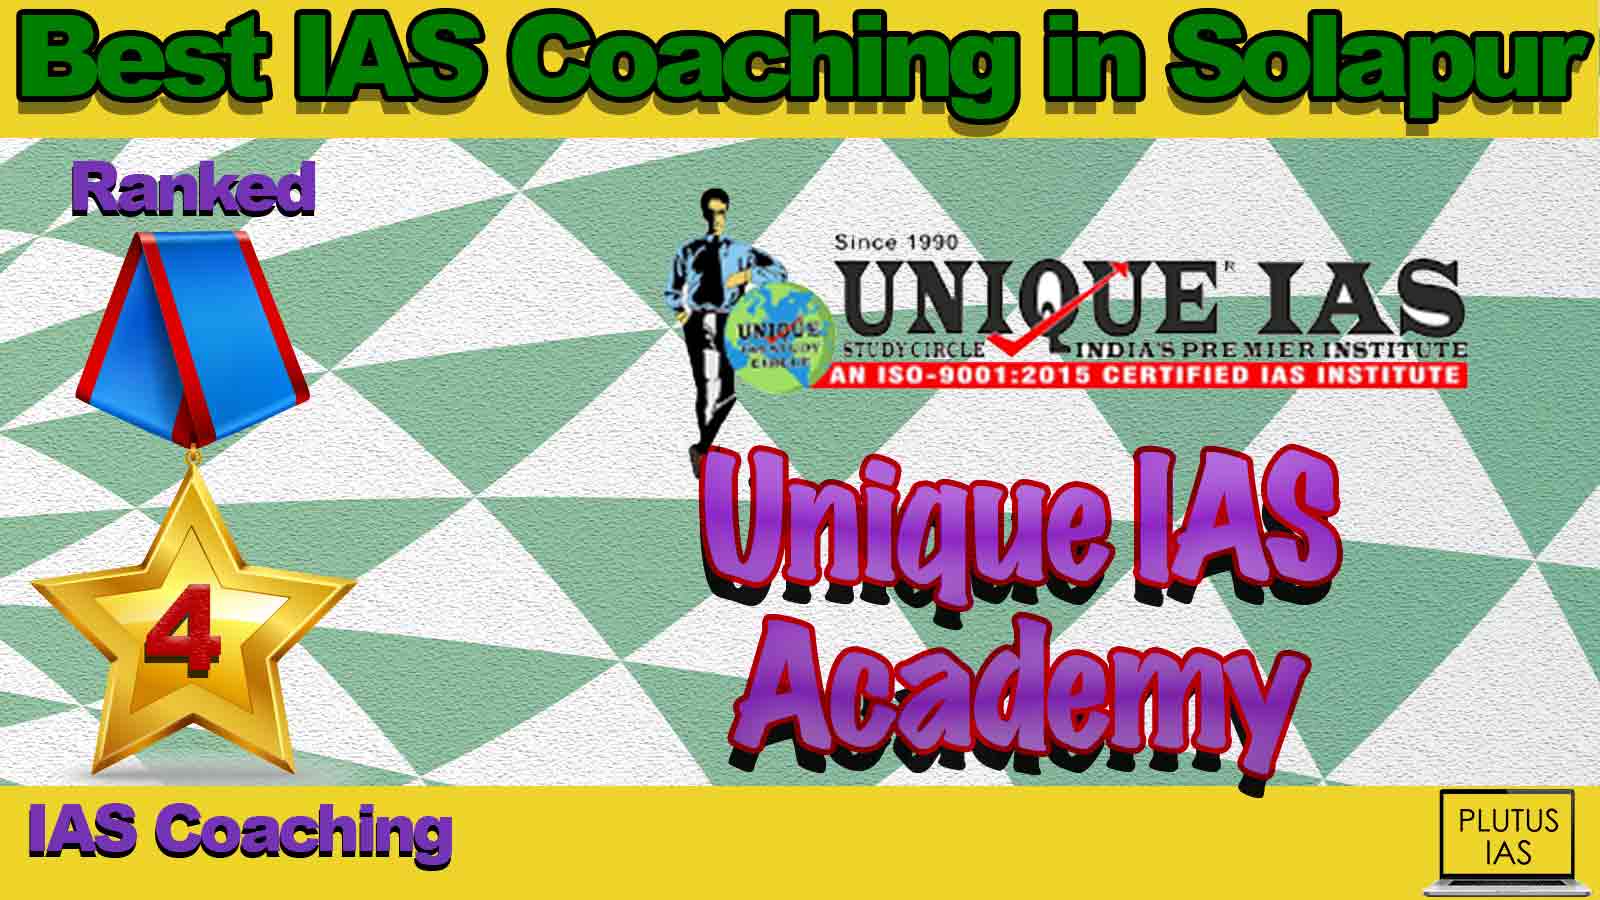 Best IAS Coaching in Solapur